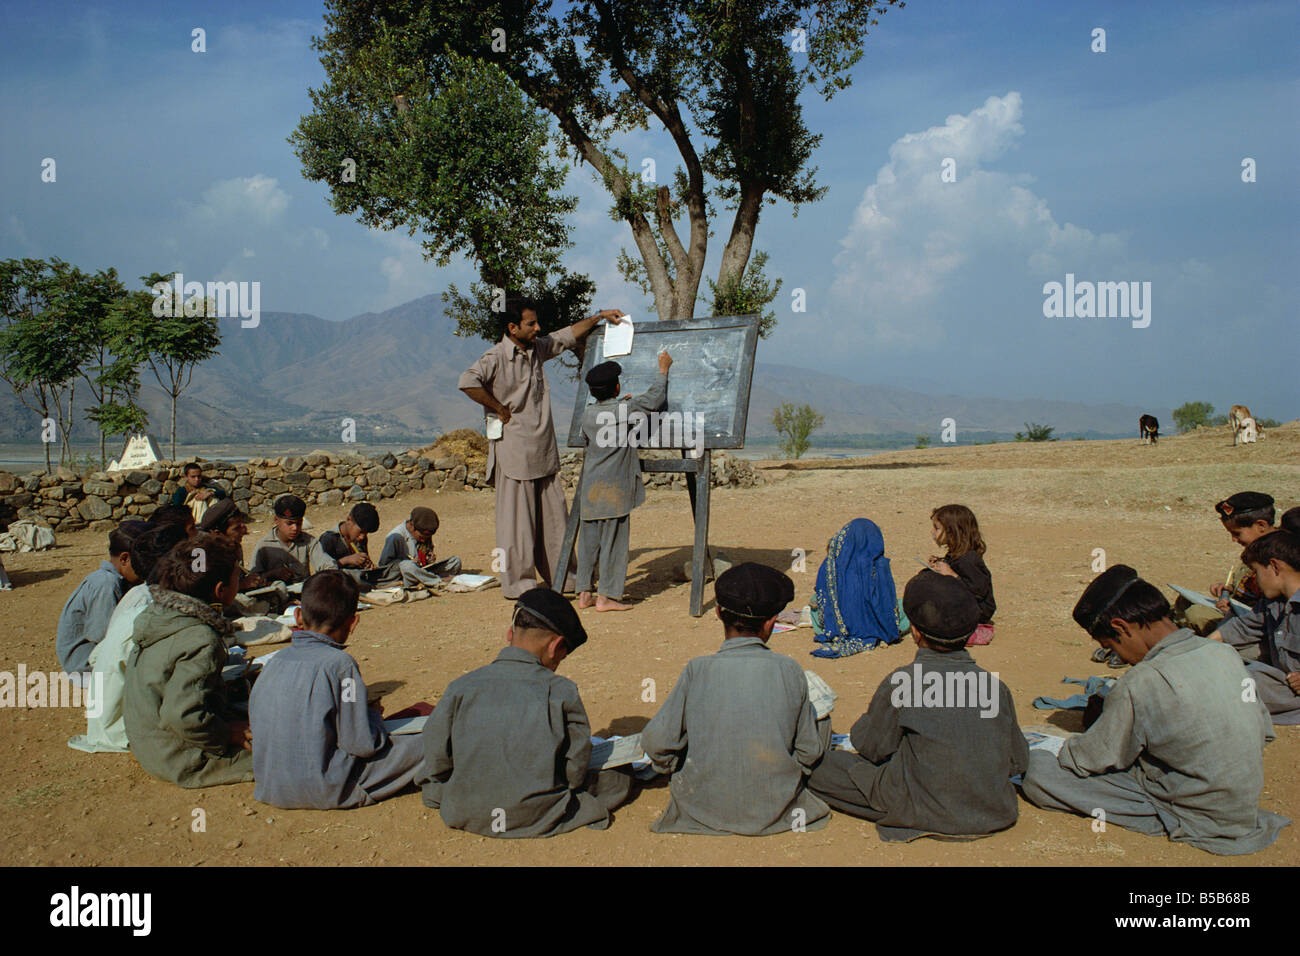 https://c8.alamy.com/compes/b5b68b/dos-ninas-de-la-escuela-separada-de-los-chicos-de-una-escuela-de-pueblo-en-el-valle-de-swat-pakistan-b5b68b.jpg